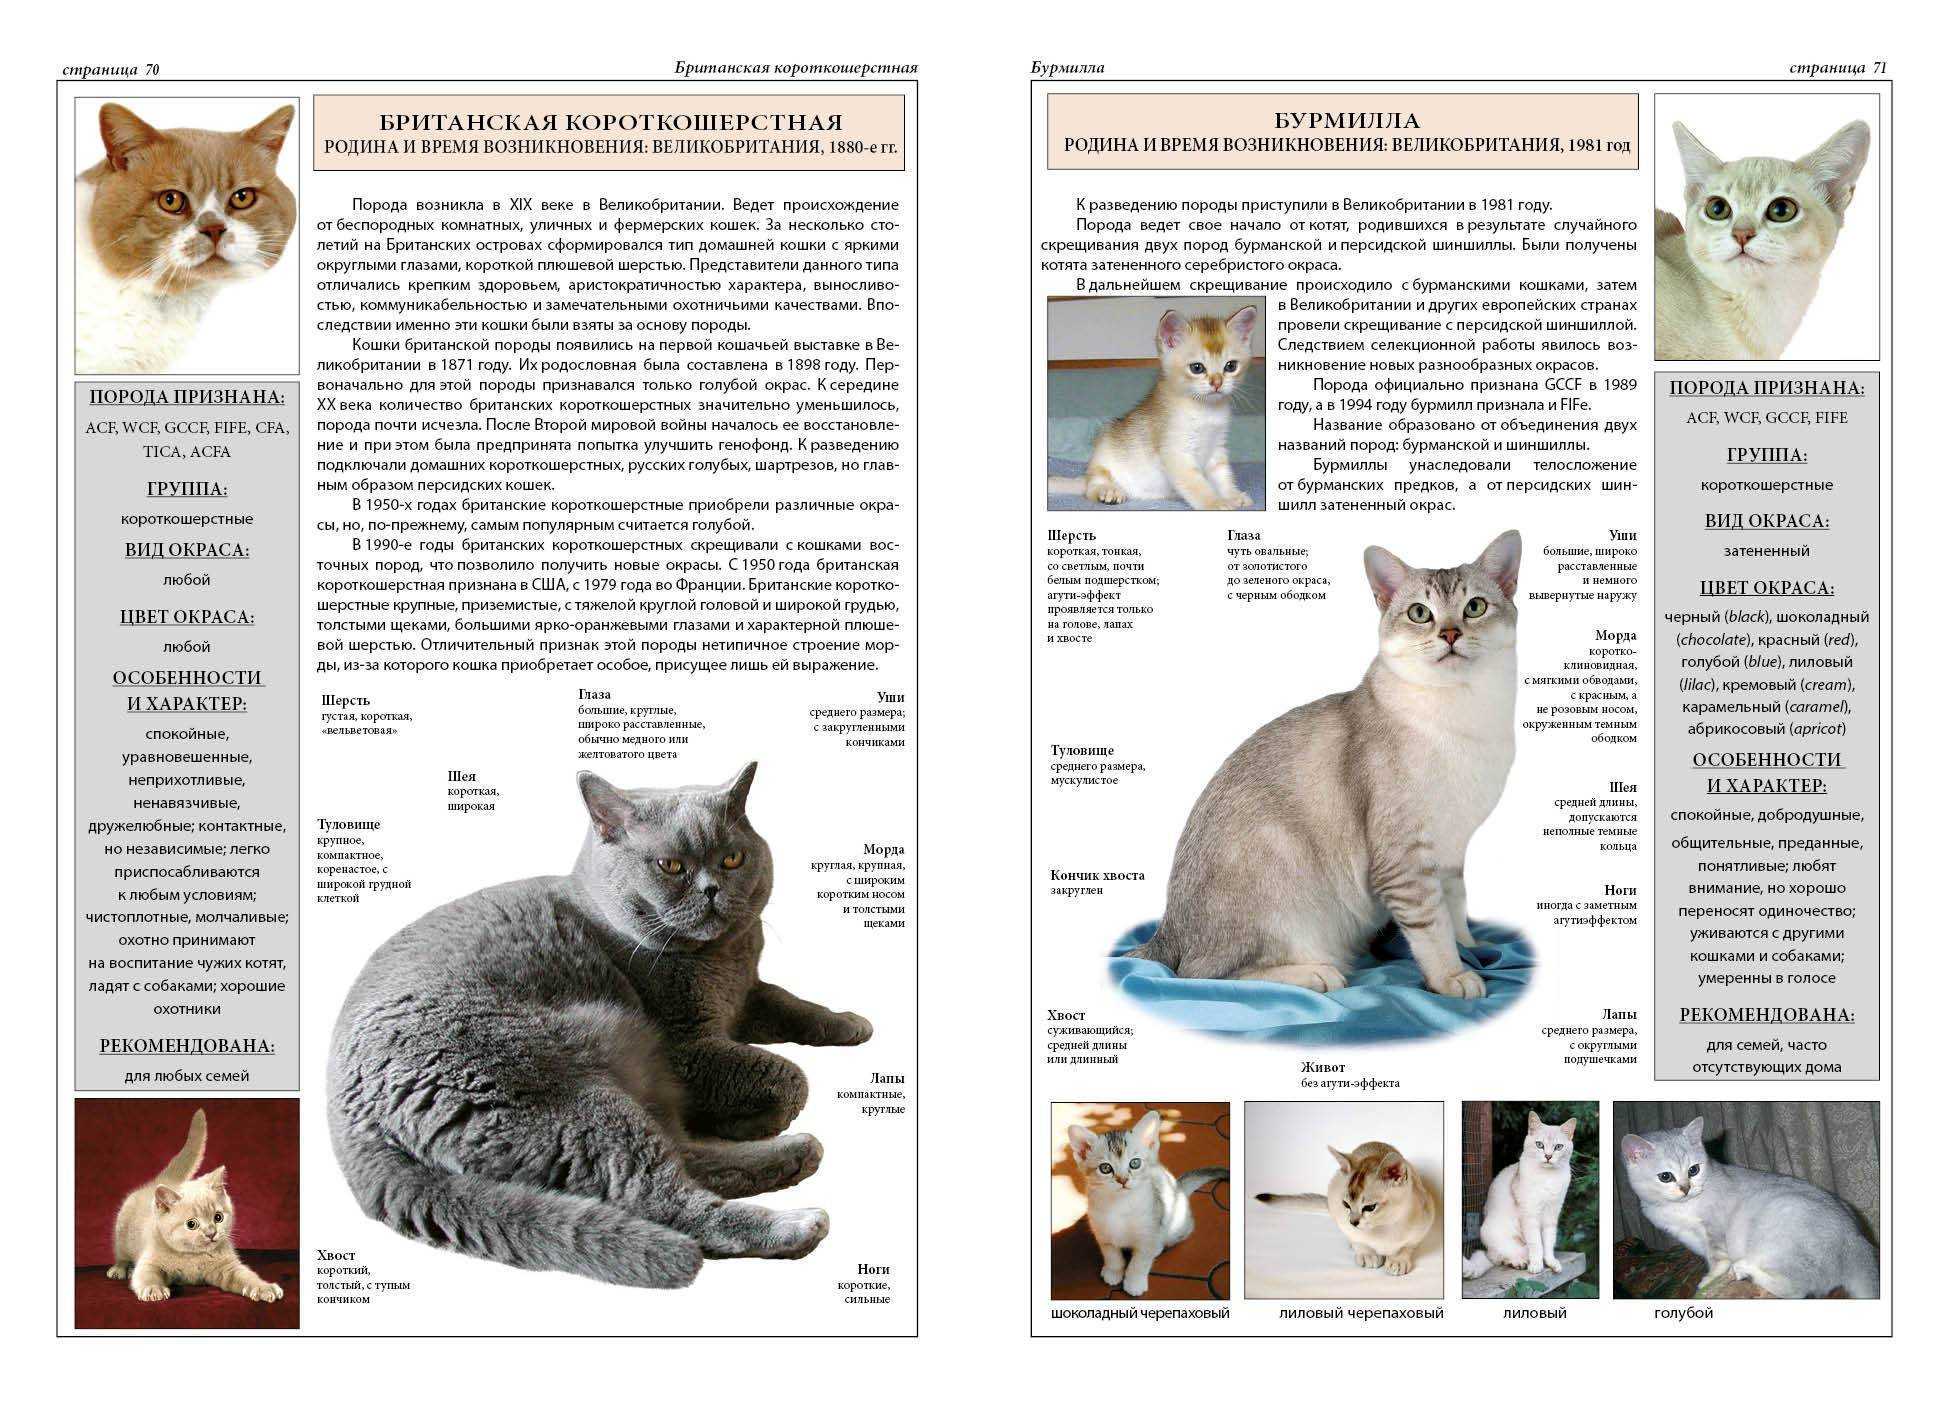 Особенности темперамента и описание кошек породы бурмилла, уход за ними